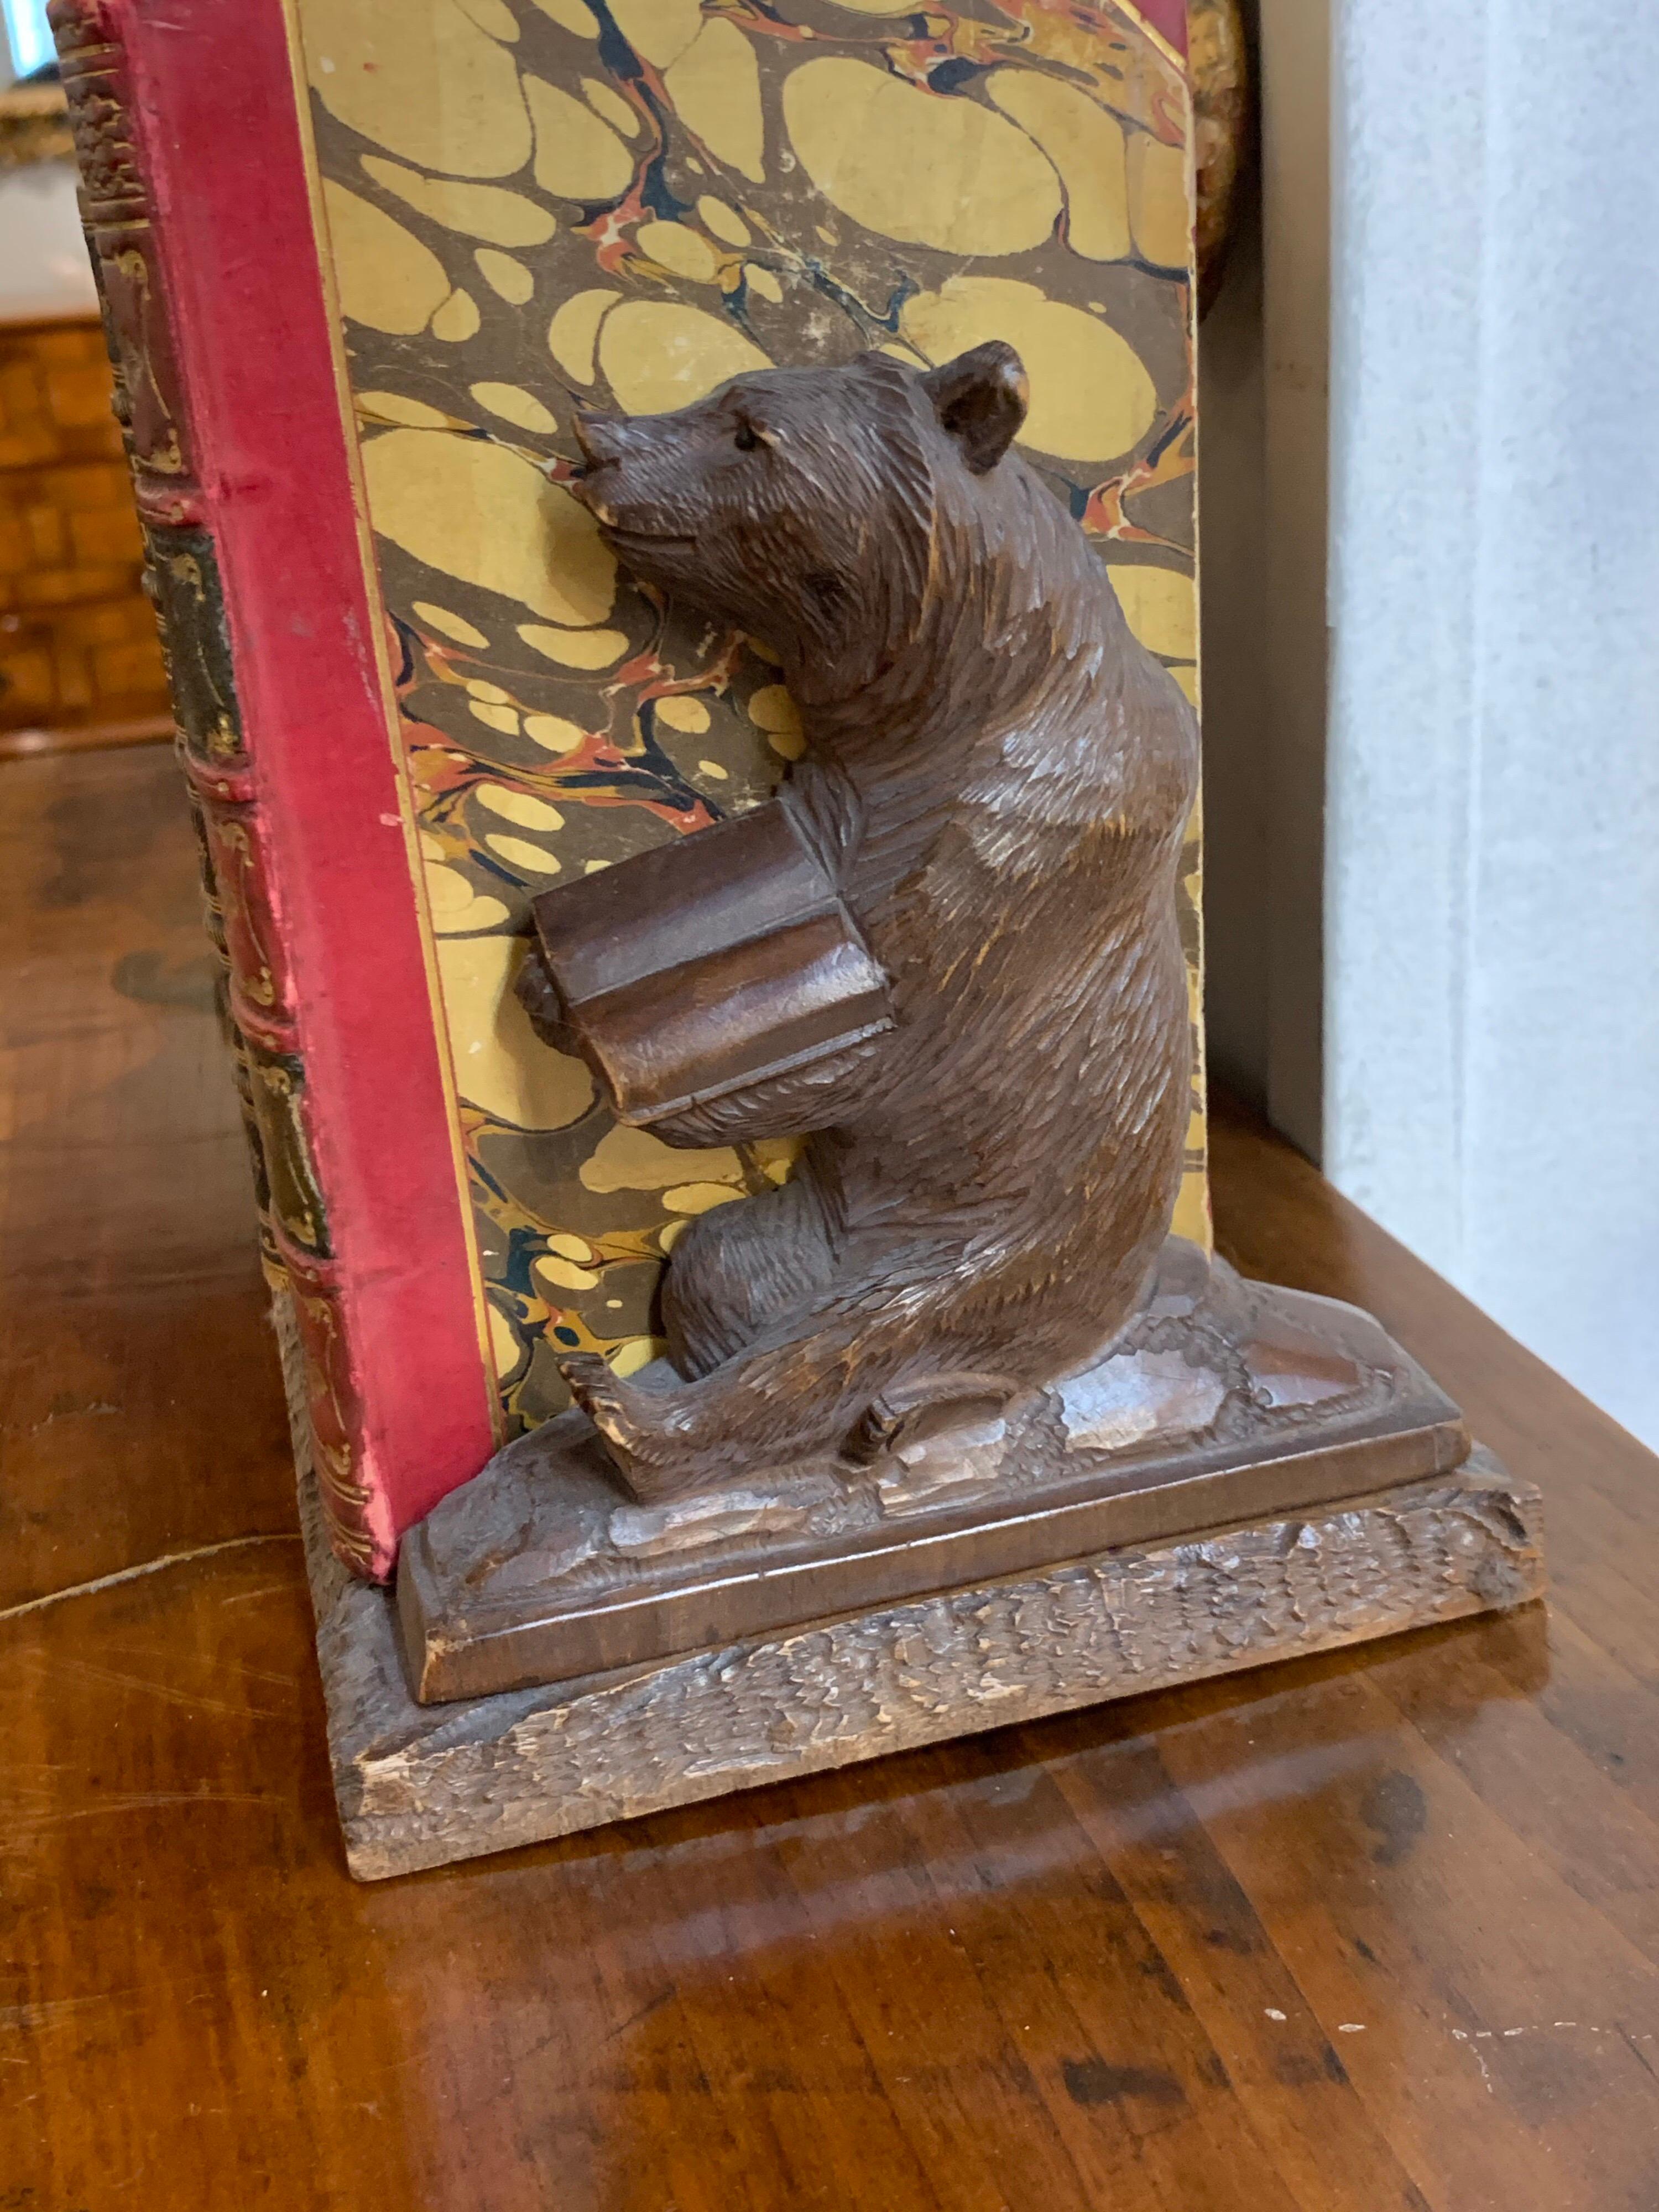 Jolis culs-de-lampe en forme d'ours de la Forêt-Noire. Cet ensemble est également accompagné d'un très bel ensemble de 11 livres anciens reliés en cuir. Cela ferait un cadeau intéressant !